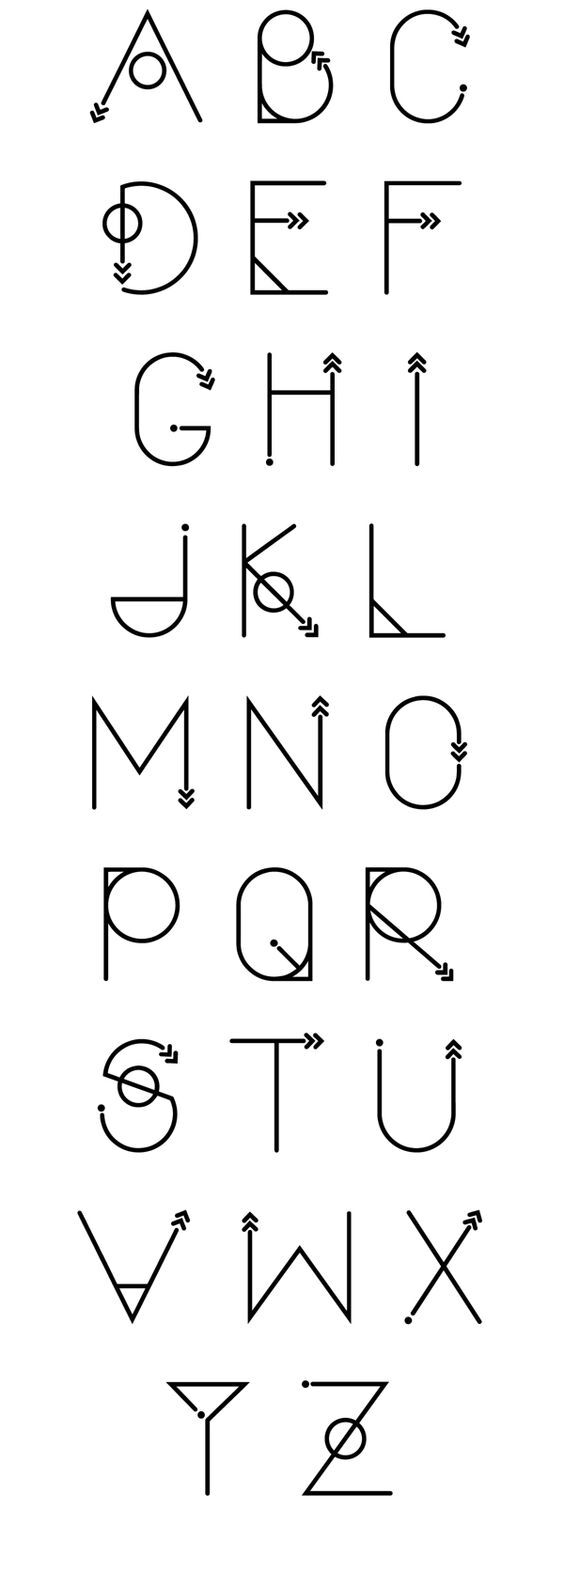 英文字体 26个字母 手写 设计 素材 教程 转自pinterest